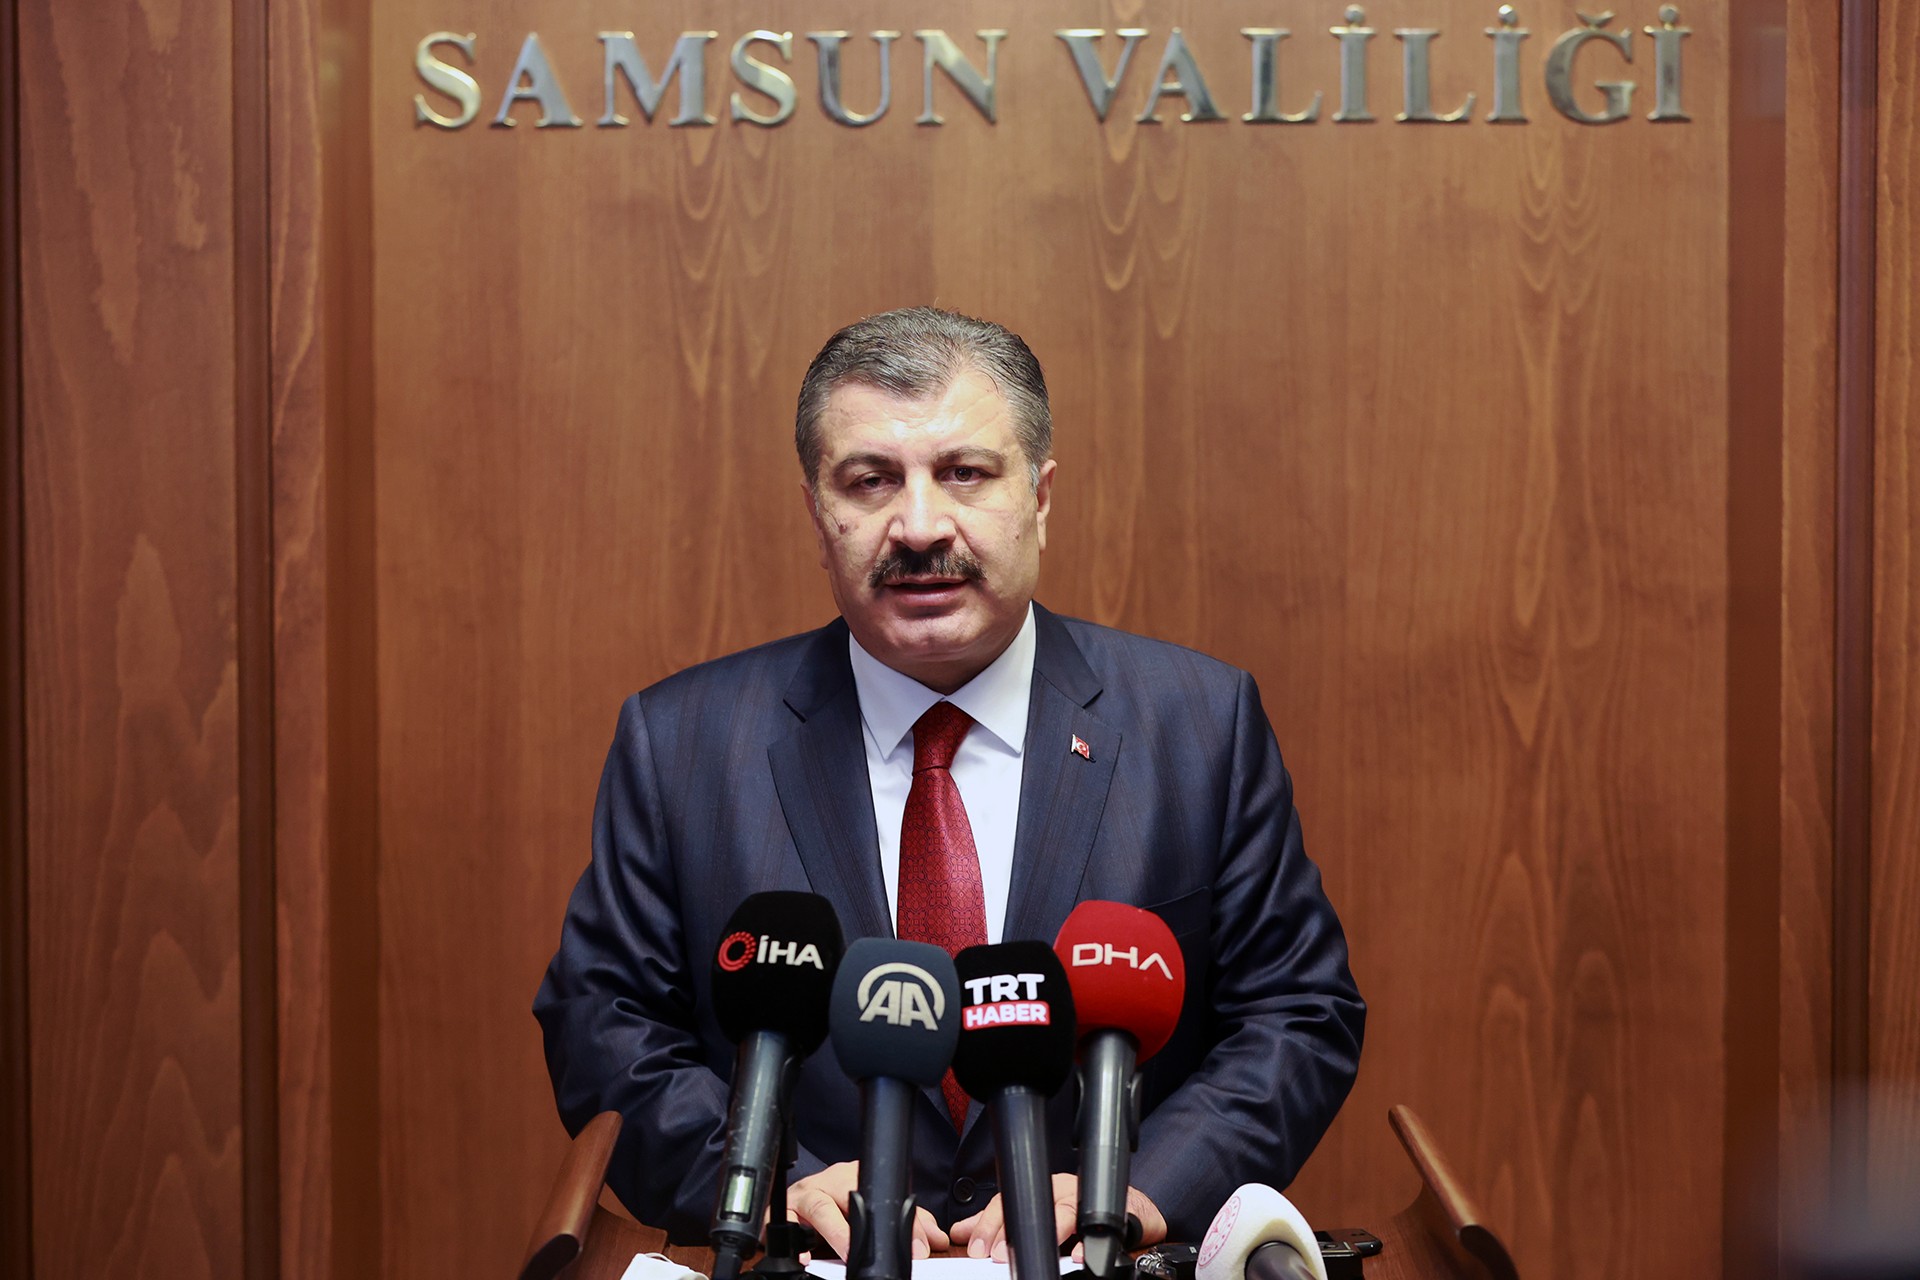 Sağlık Bakanı Fahrettin Koca, Samsun'da basına açıklamada bulunurken.